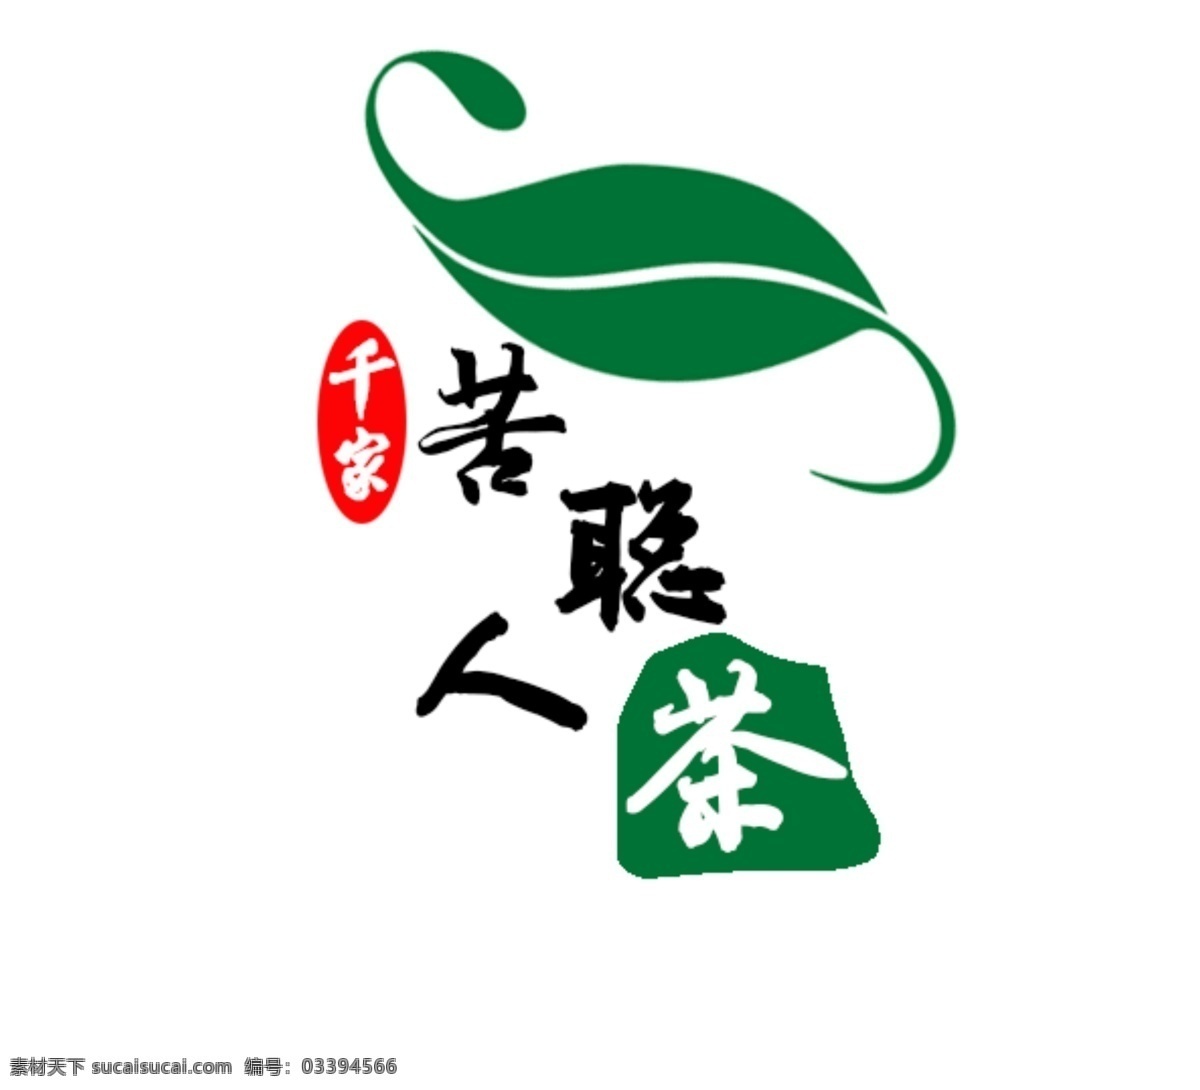 茶叶logo 茶叶 logo 矢量图 茶叶包装 包装设计 logo设计